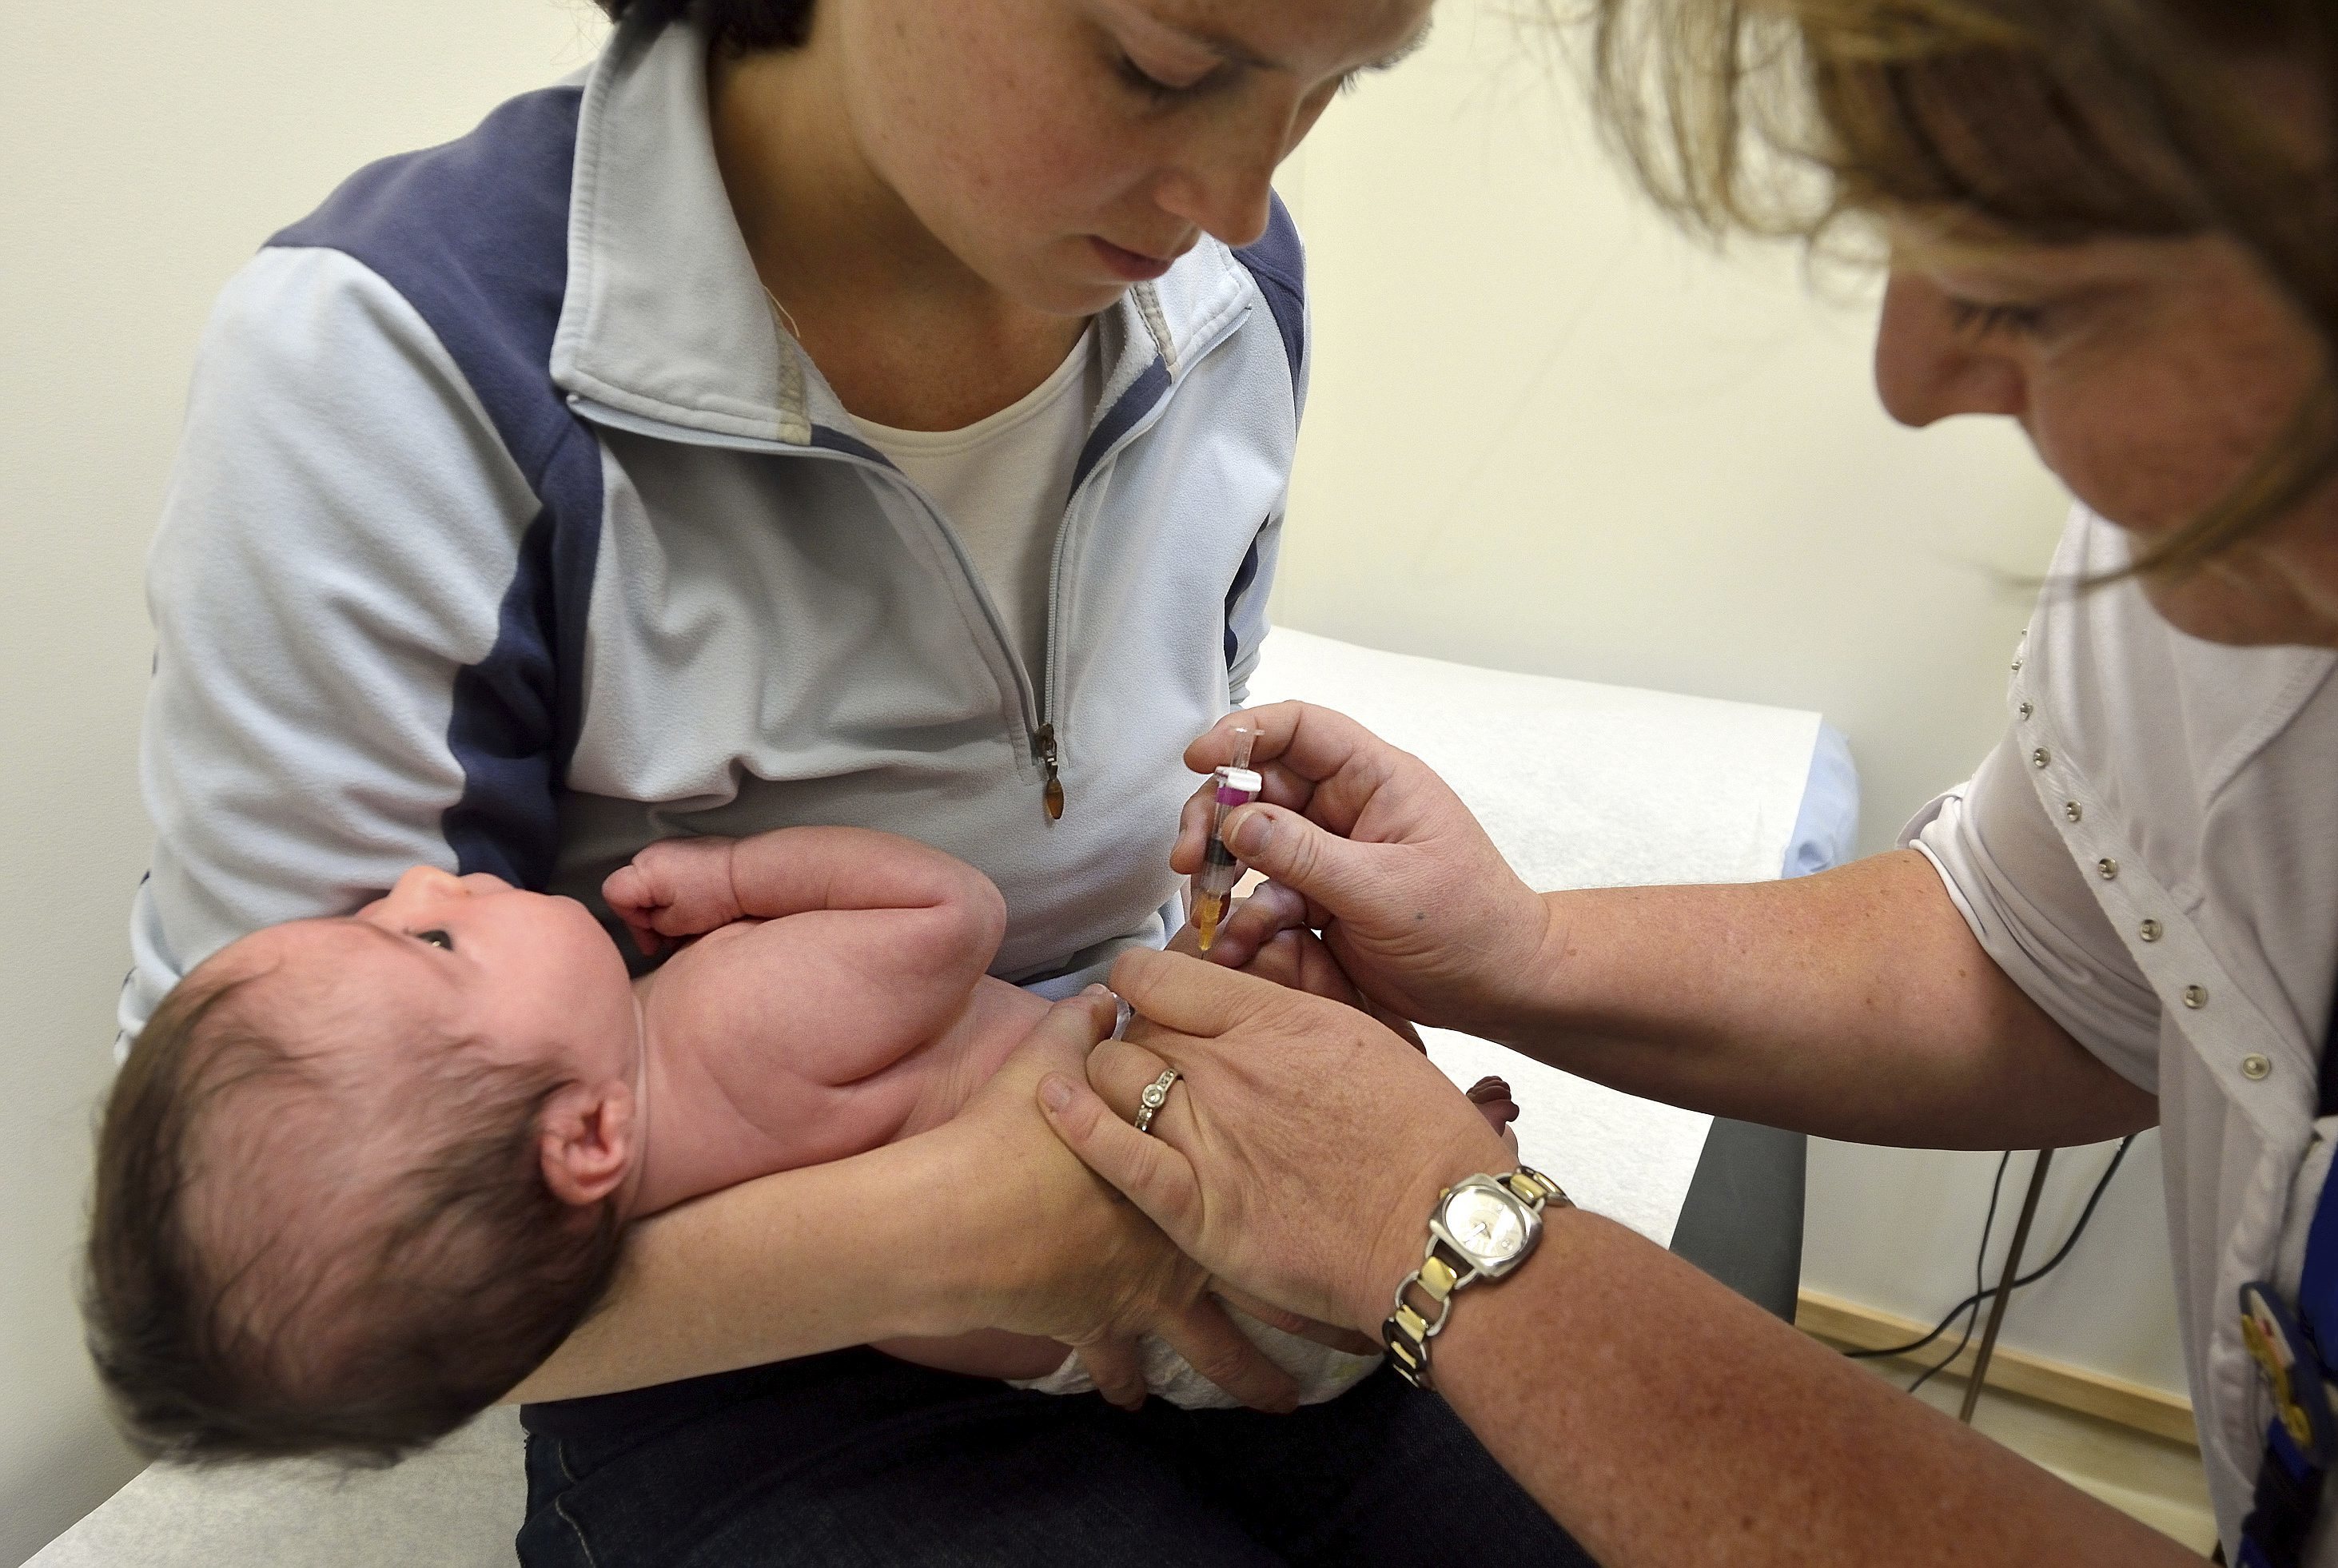 Un beb es vacunado en un centro hospitalario.